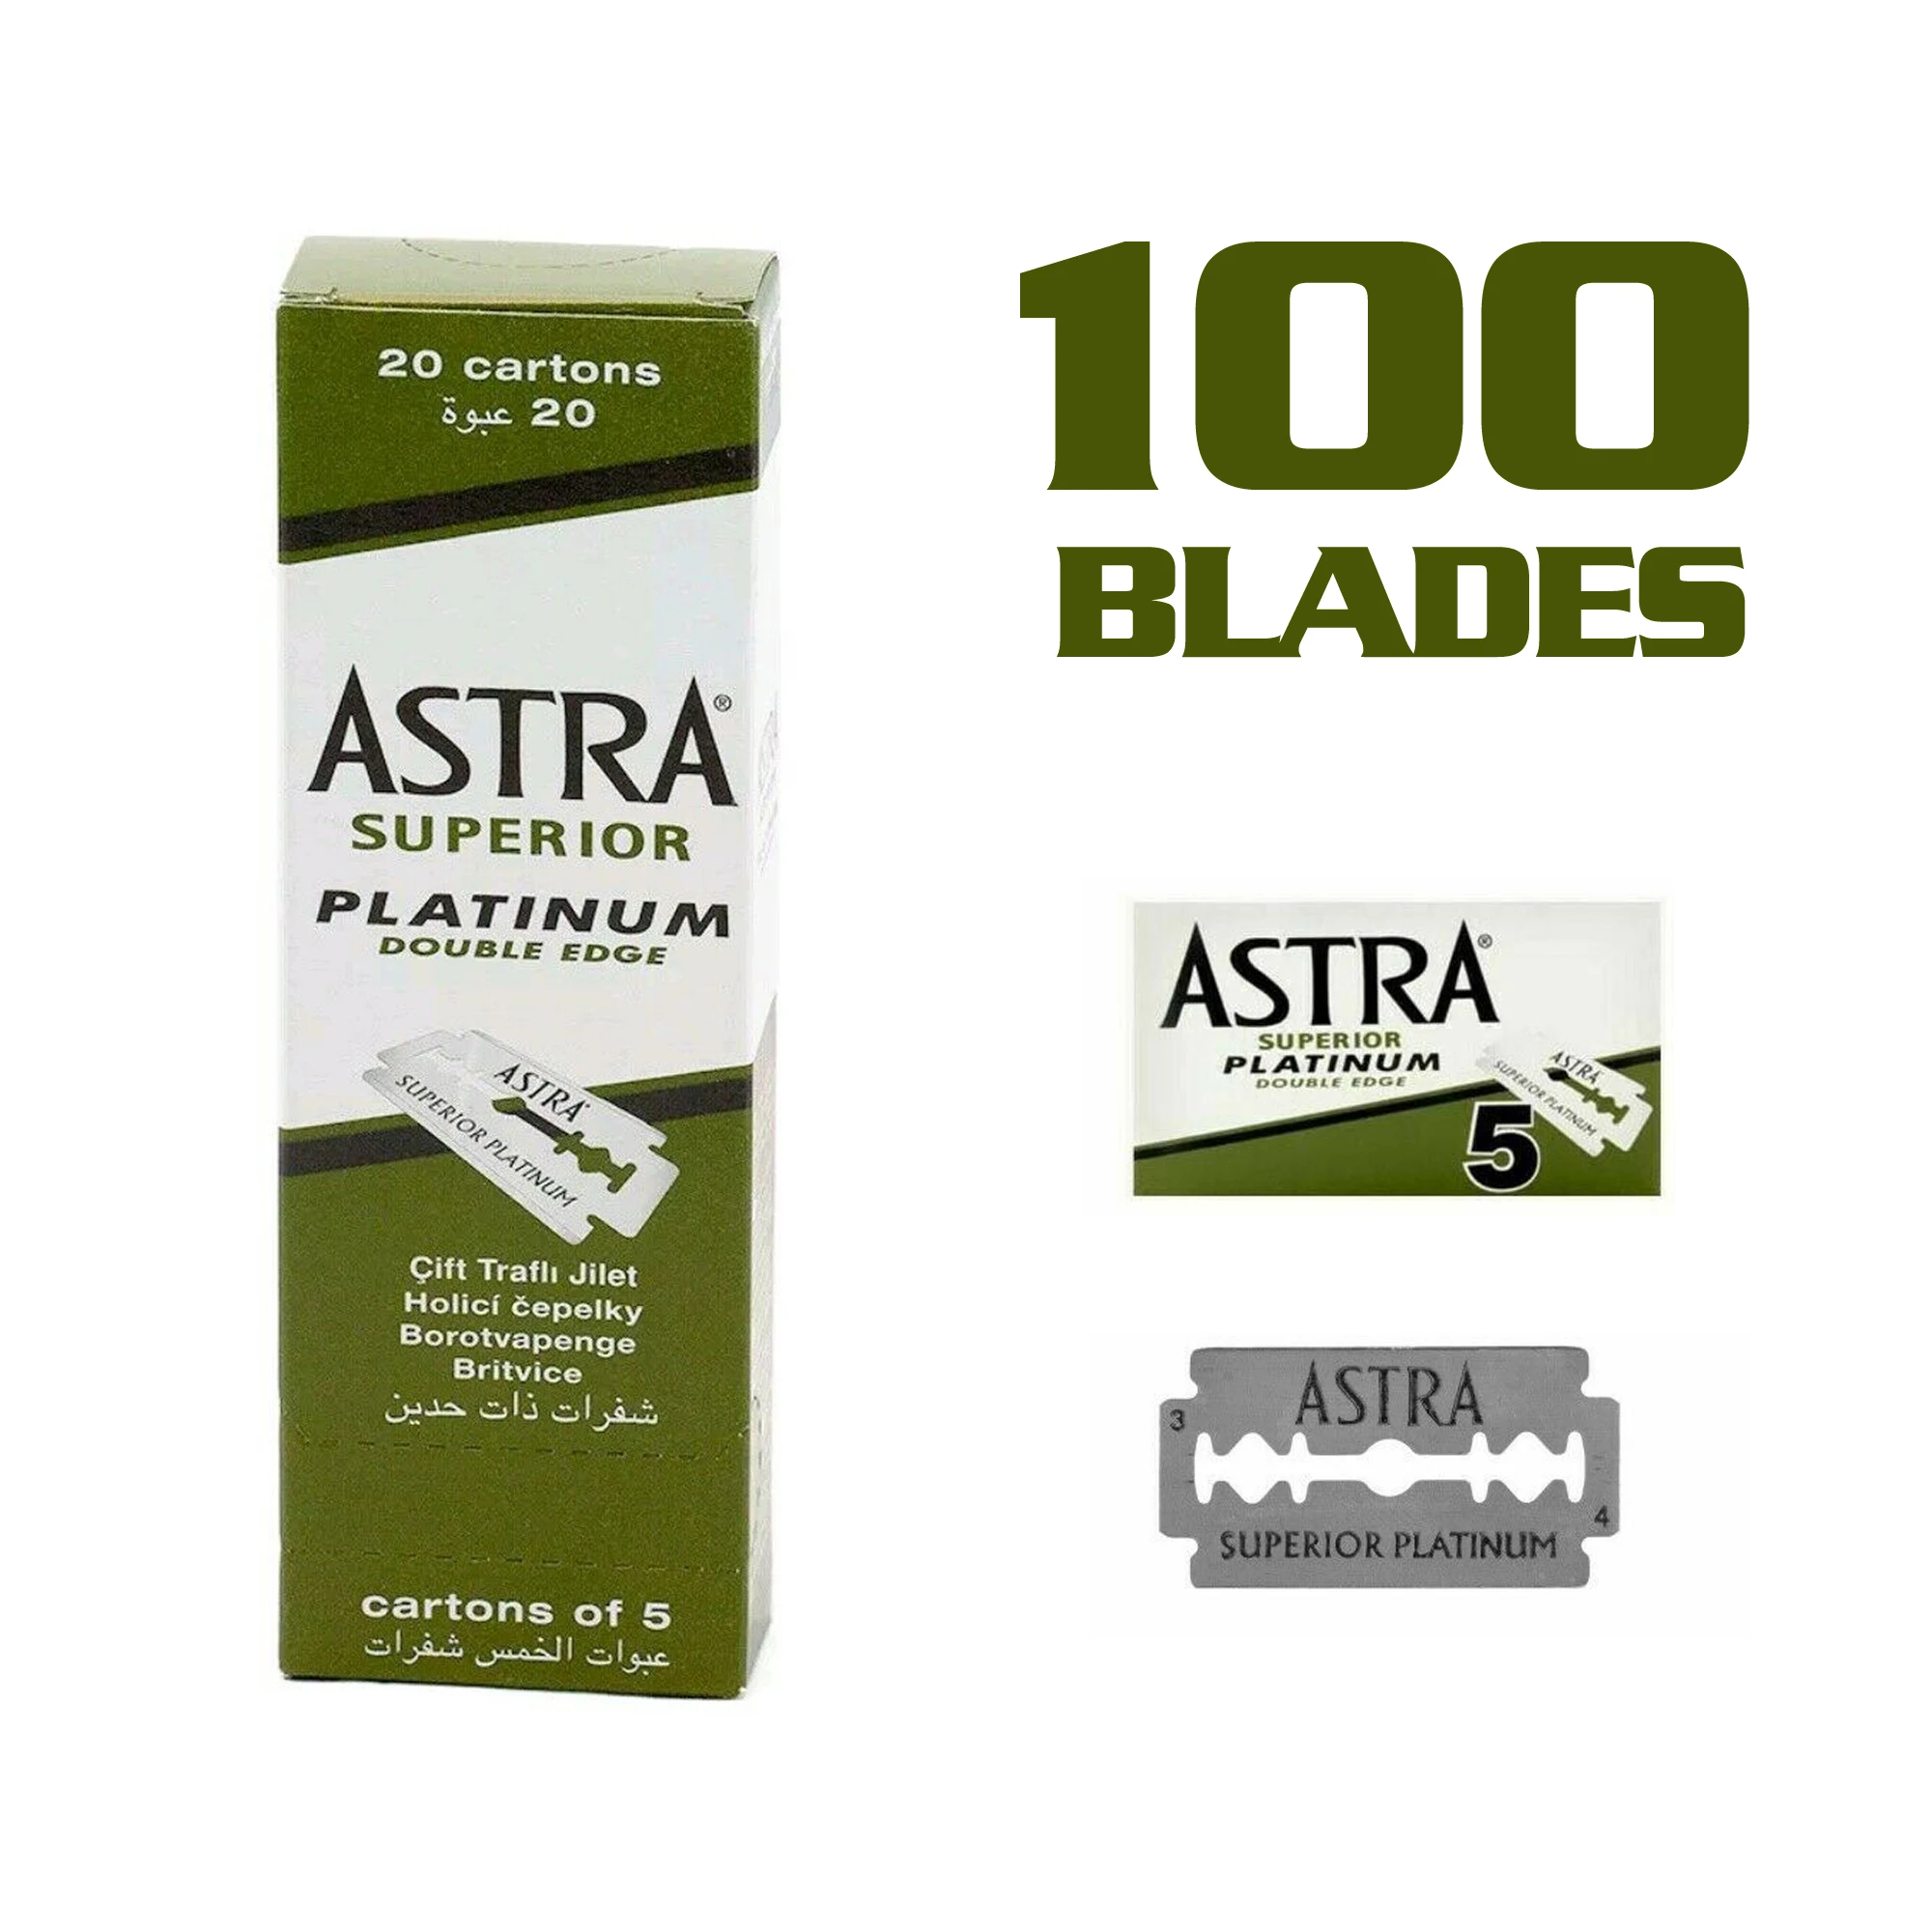 100 шт. оригинальный Astra Superior Platinum Double Edge бритья Razor Blades + ARKO Для мужчин Мыло для бритья Stick 75 г подарок от AliExpress WW